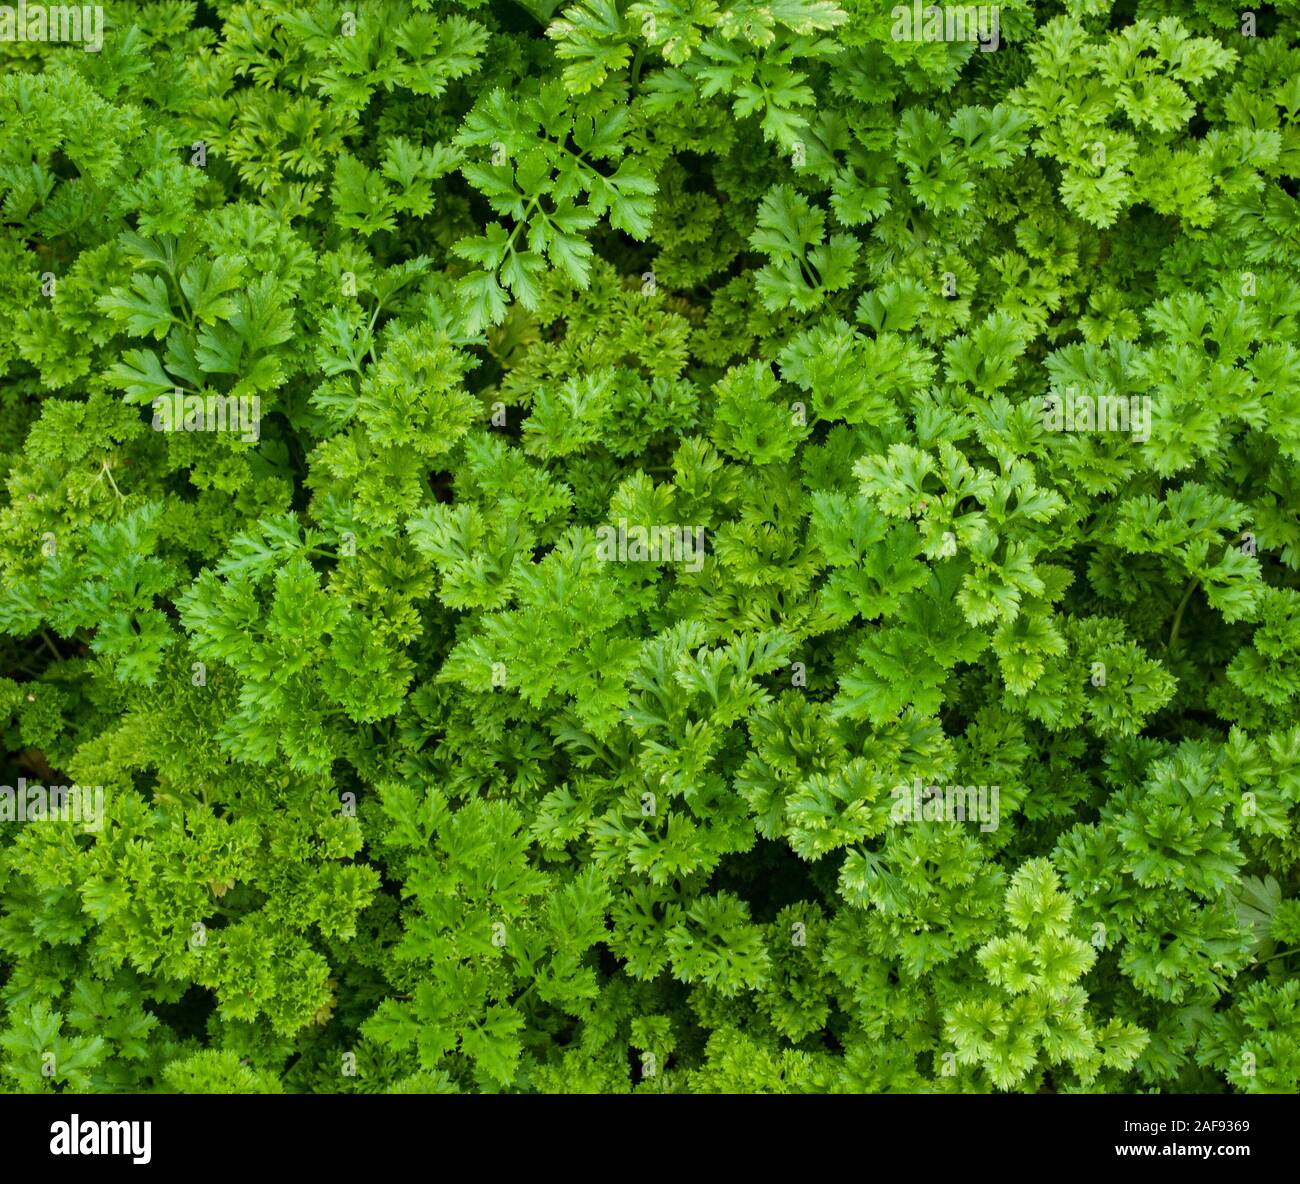 Grüne curly Petersilie im Garten wächst, Hintergrund Textur Foto Stockfoto